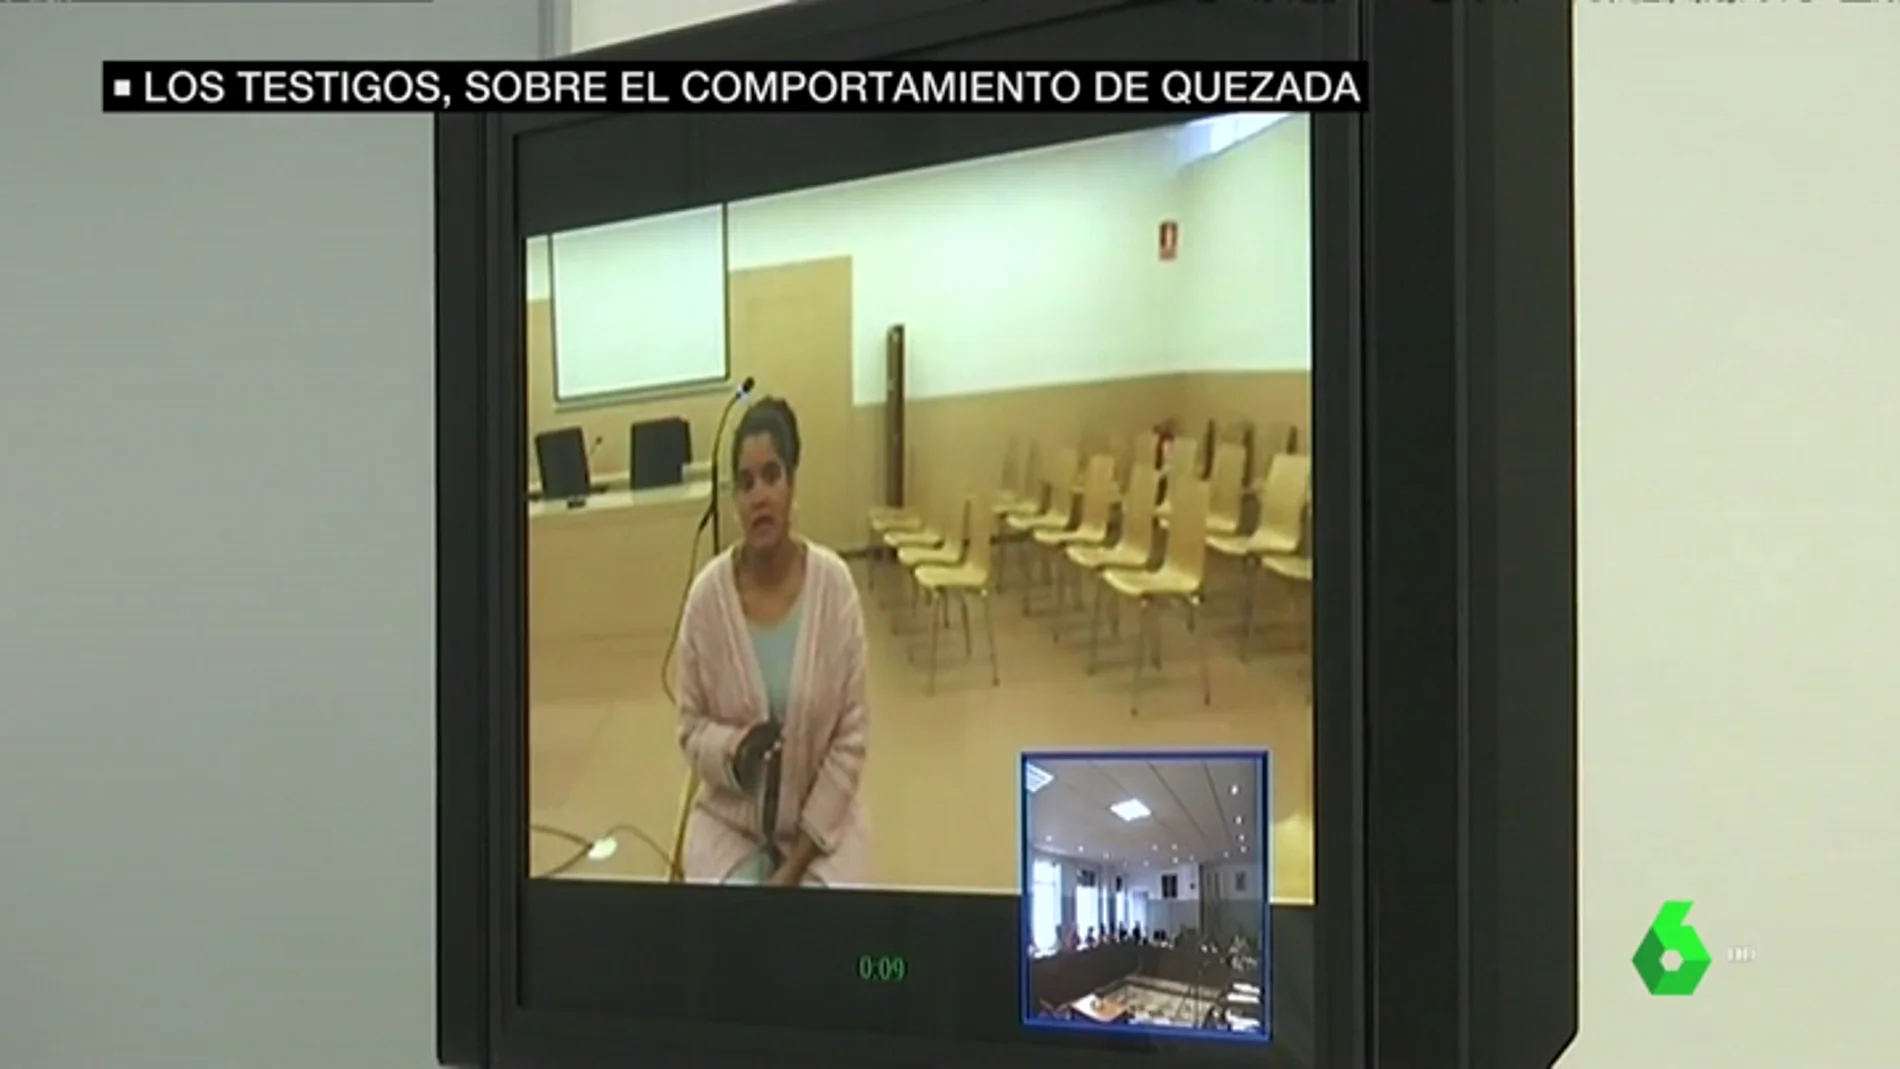 La hija de Ana Julia Quezada se sintió "utilizada" por su madre y no quiere verla ni hablar con ella